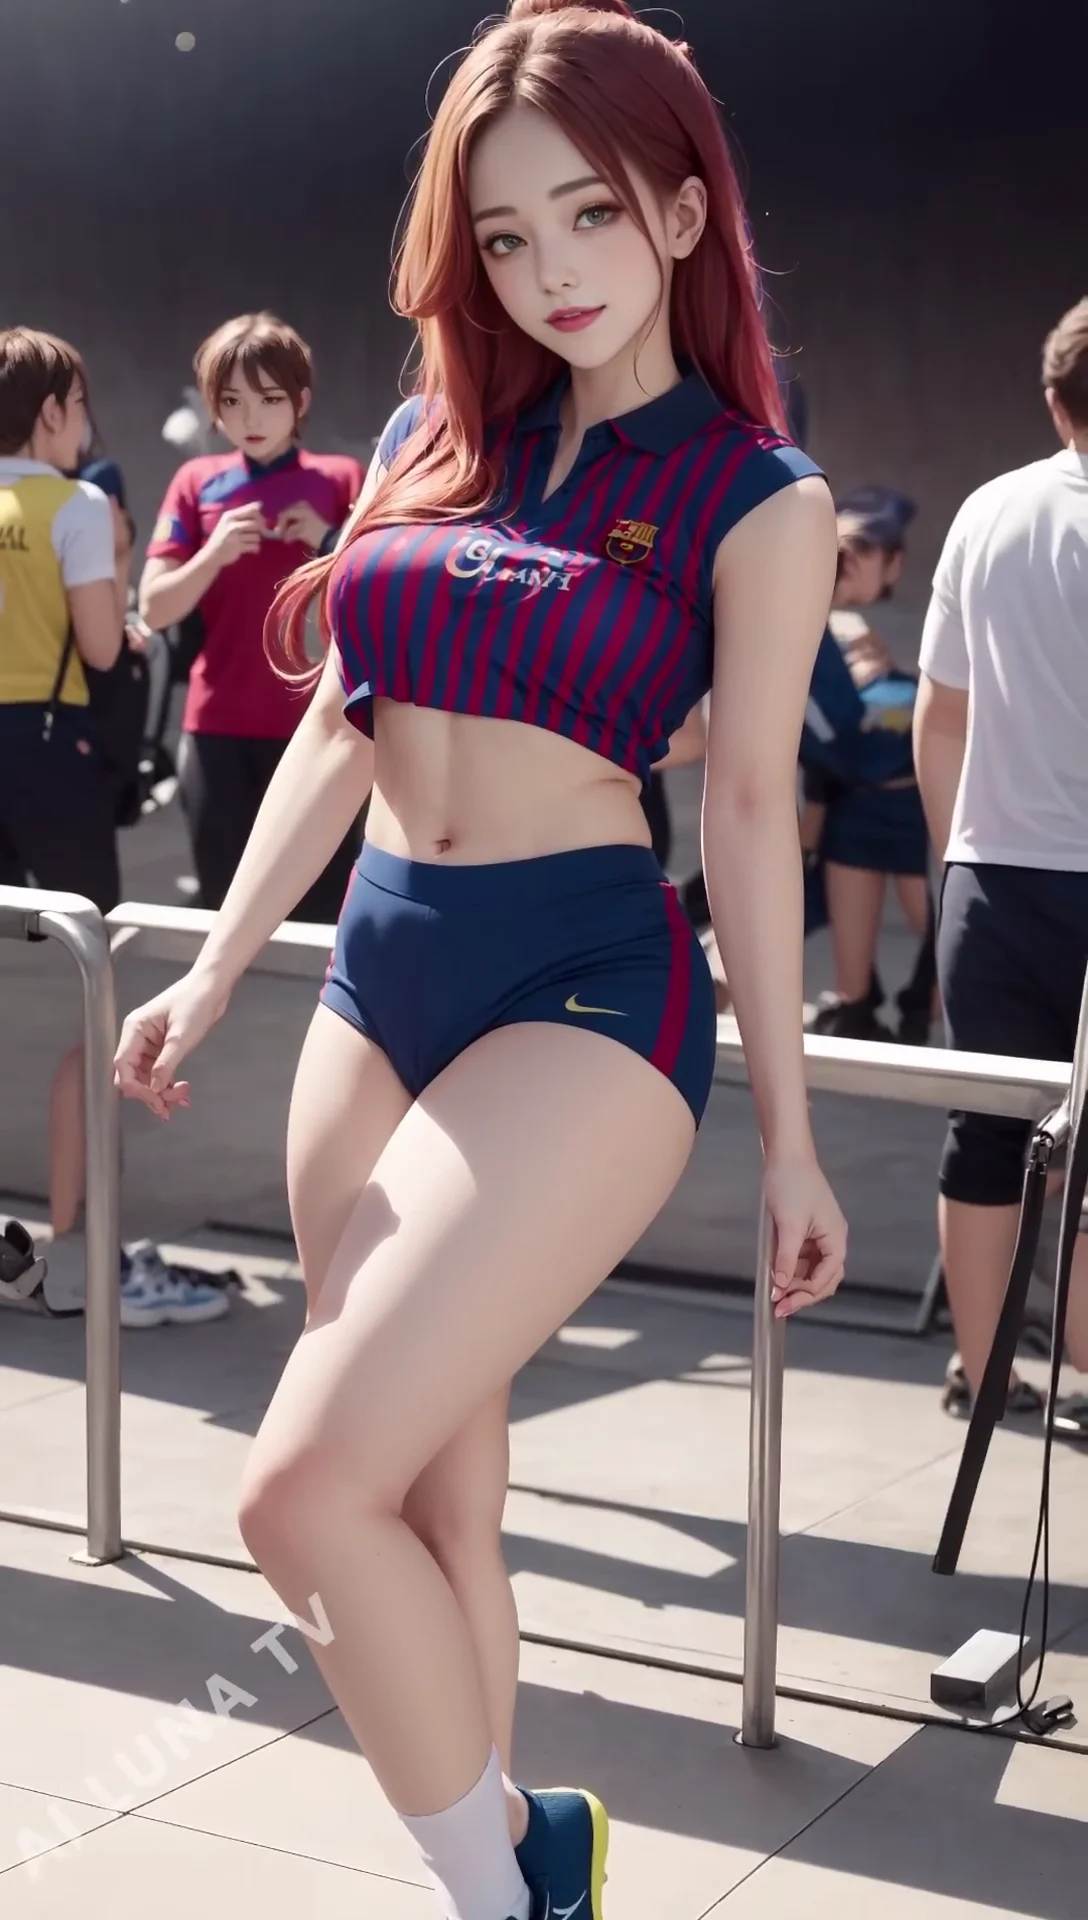 Ai Lookbook FC Barcelona Girl Images - 바르셀로나 걸스 팬 03